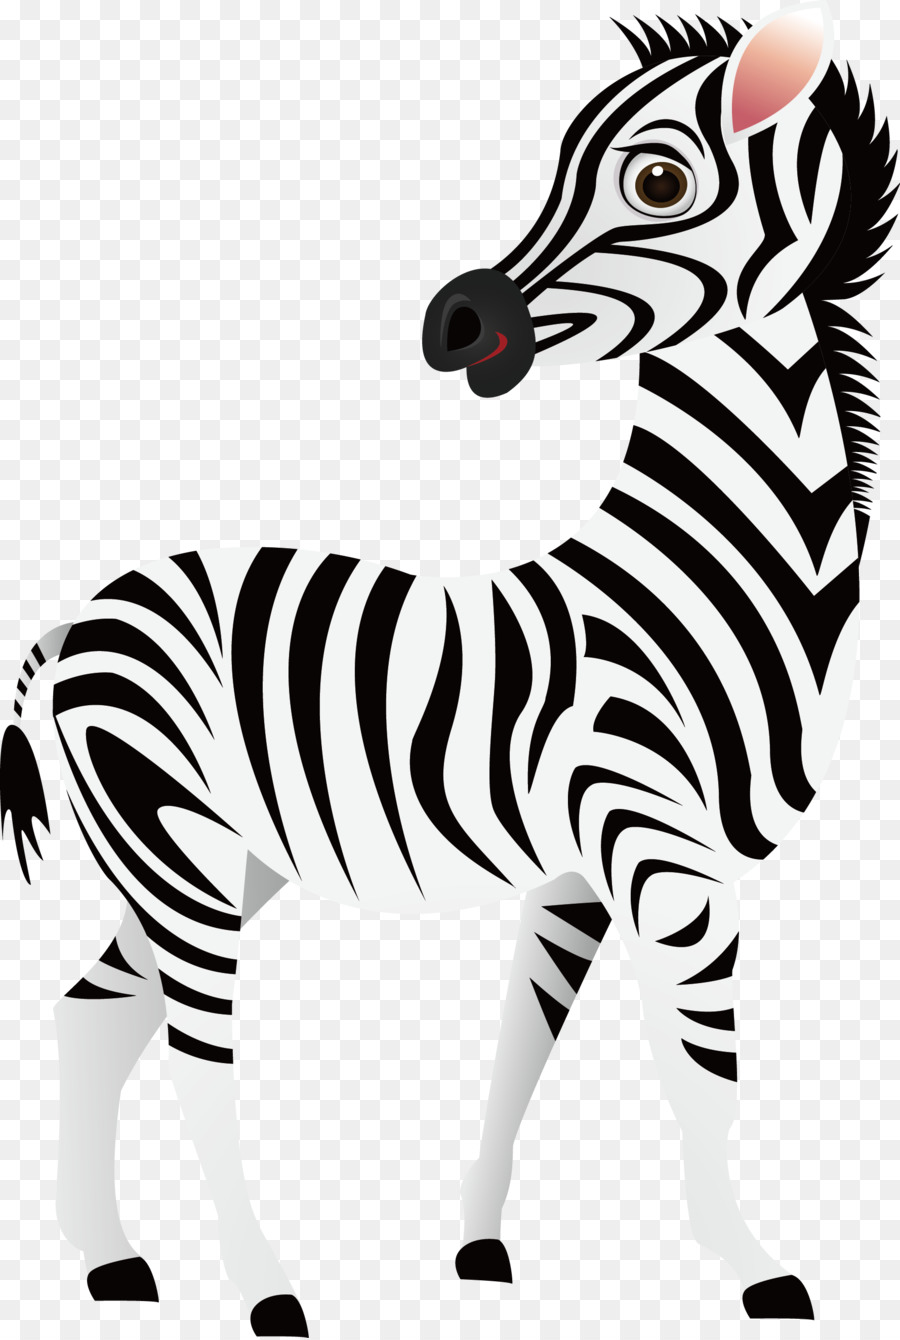 Download 54 Gambar Animasi Hewan Zebra Paling Baru - Gambar Animasi